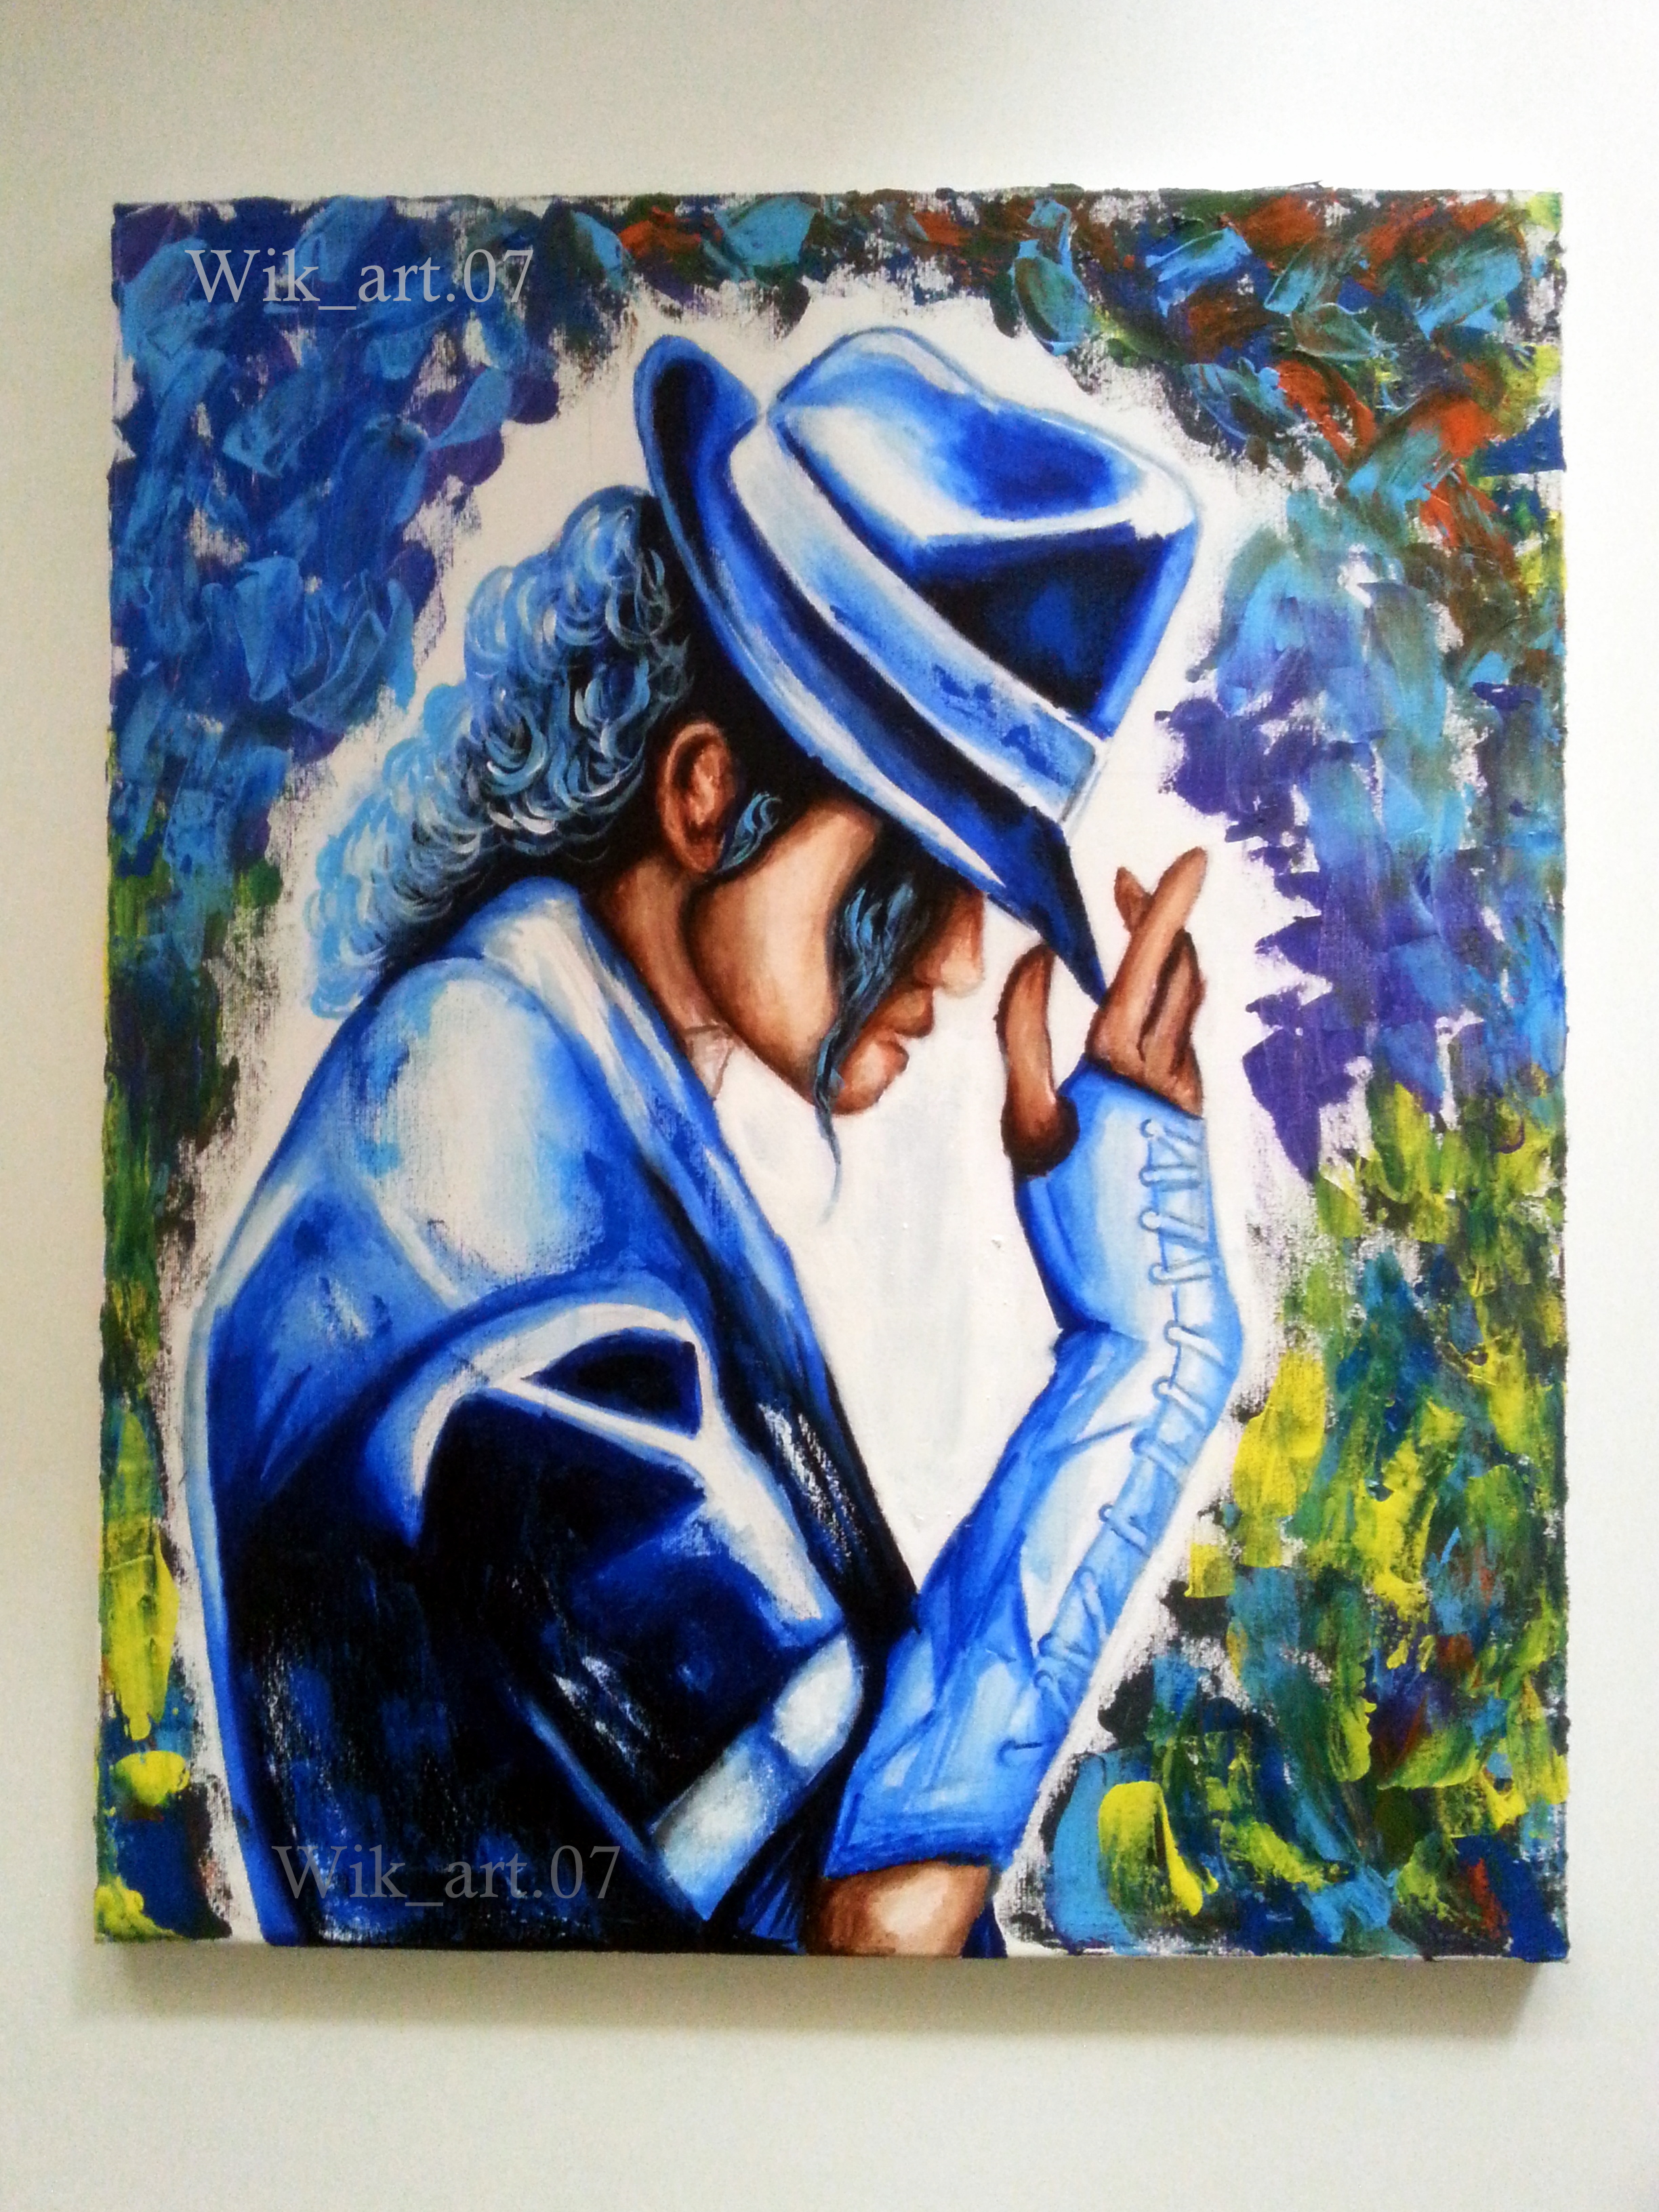 Michael Jackson forever ❤️